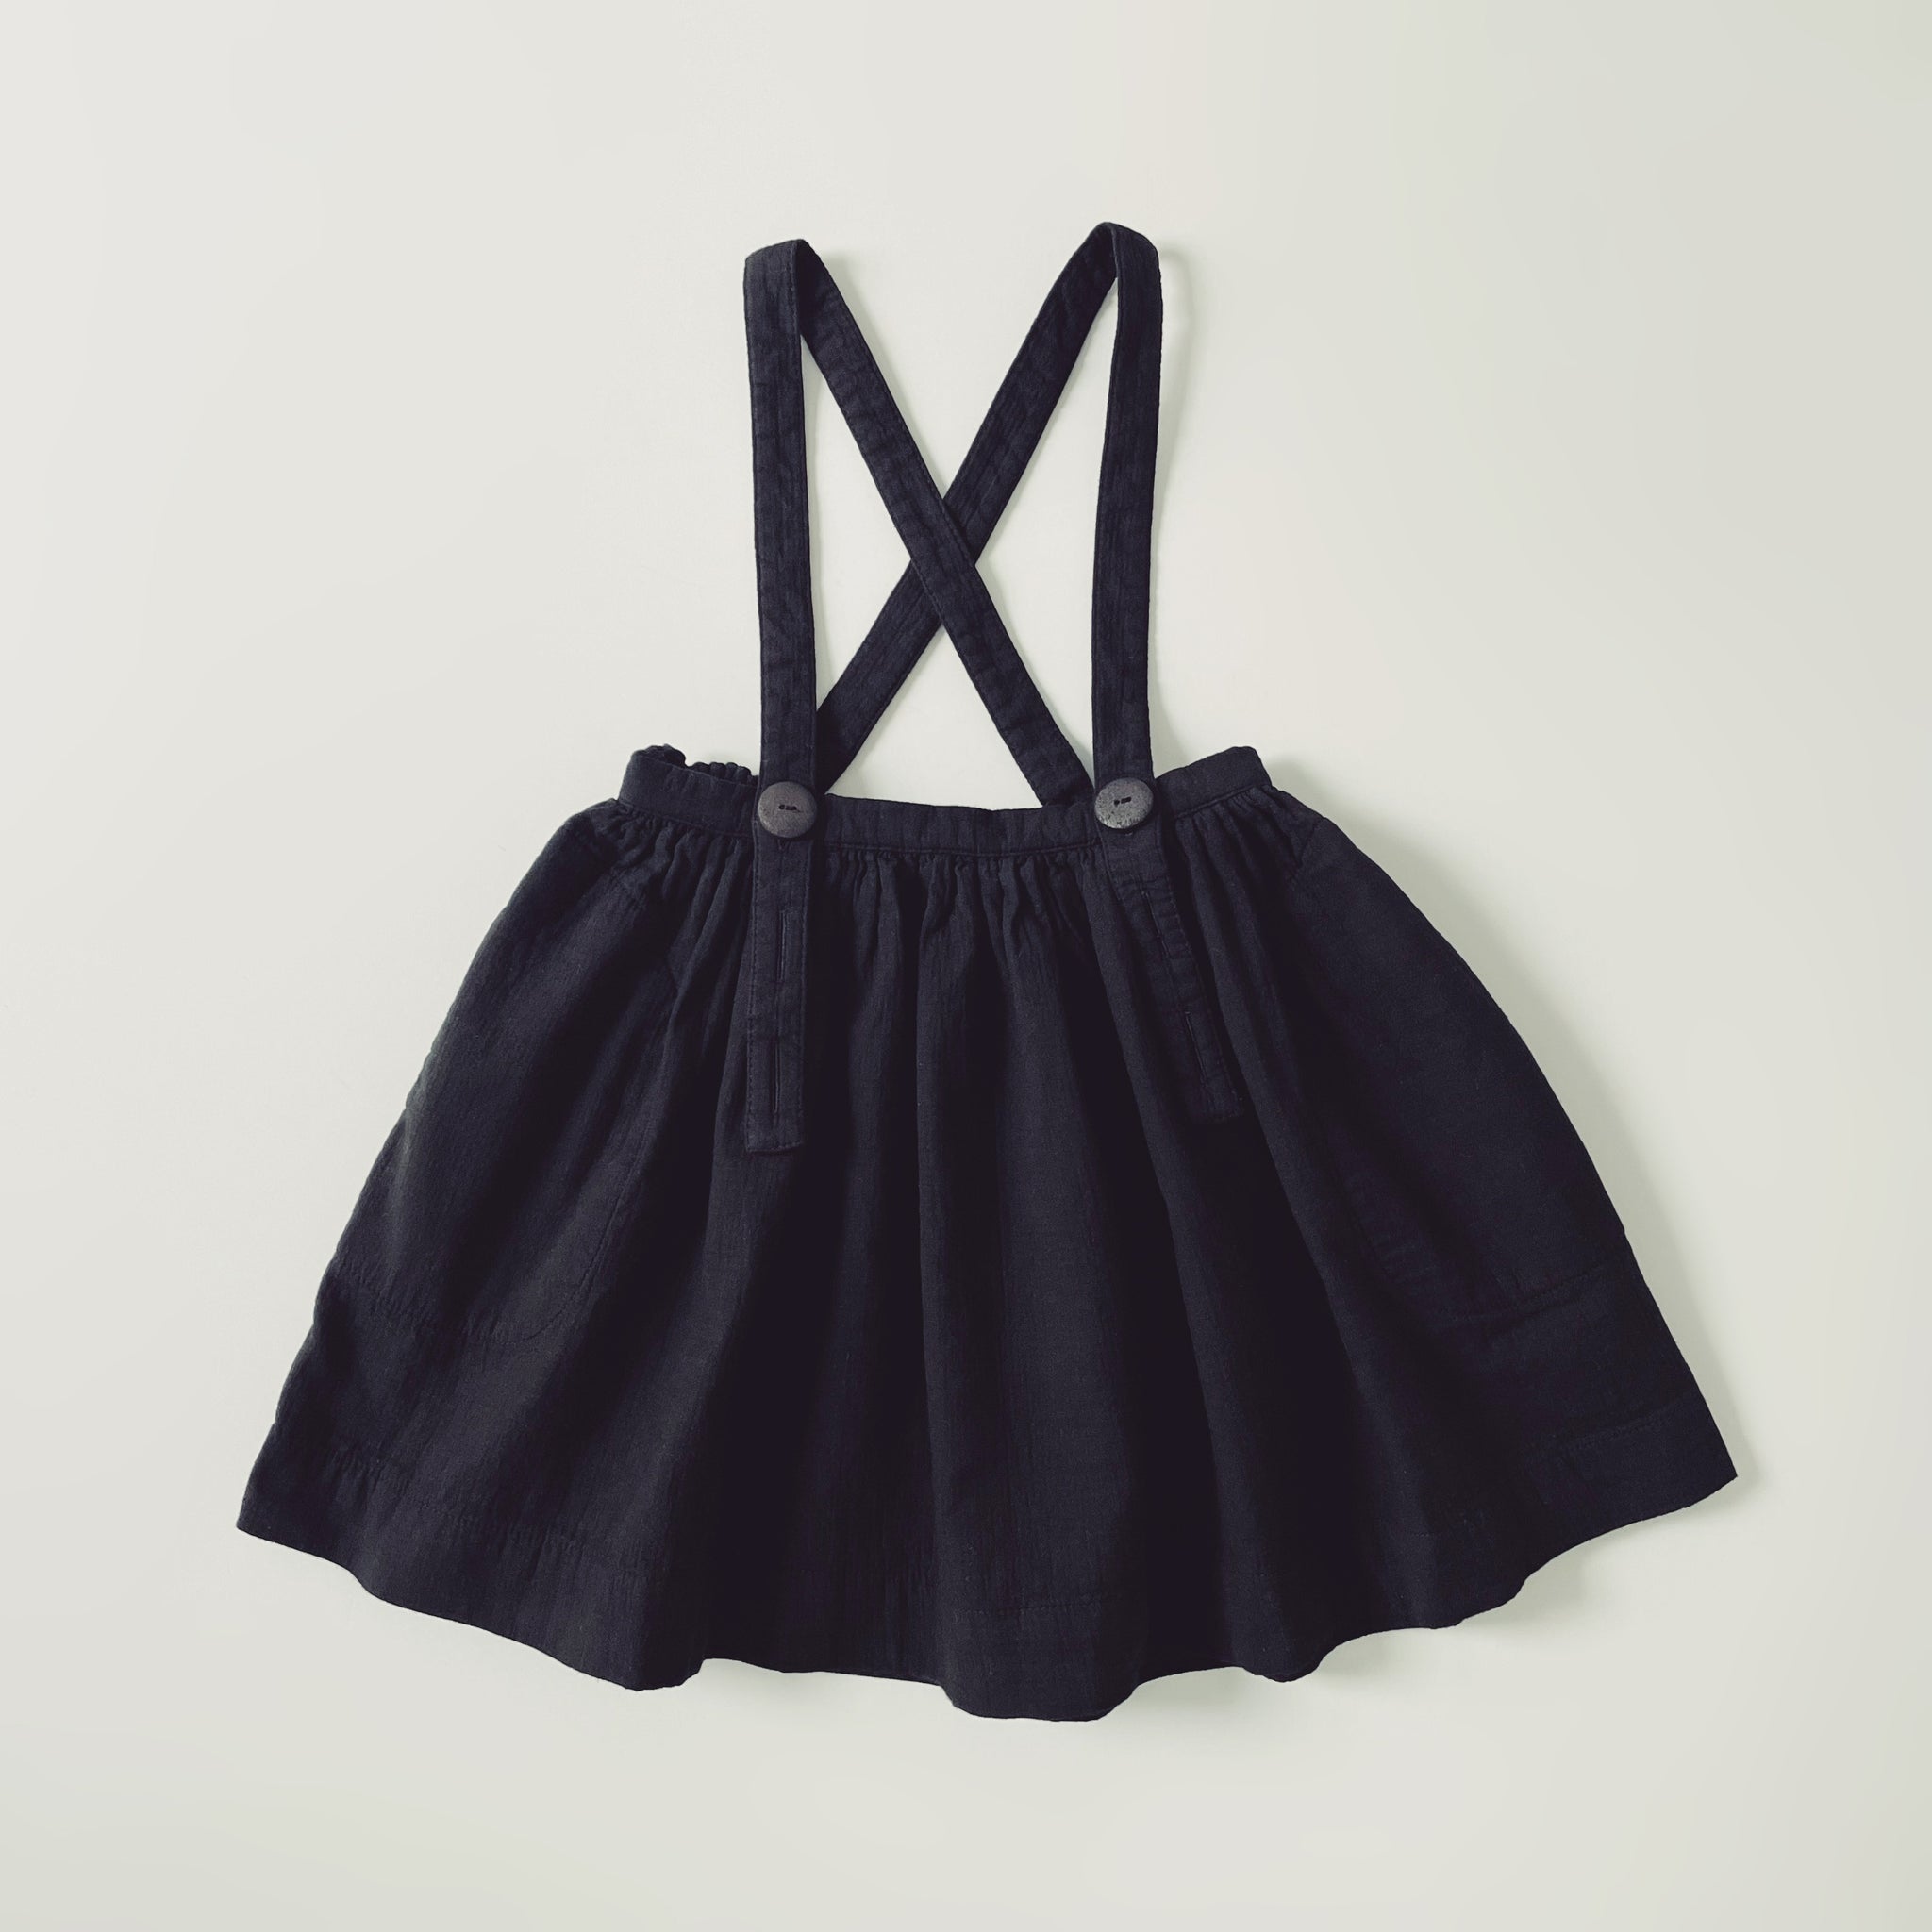 Mavis Skirt, OverDye Black